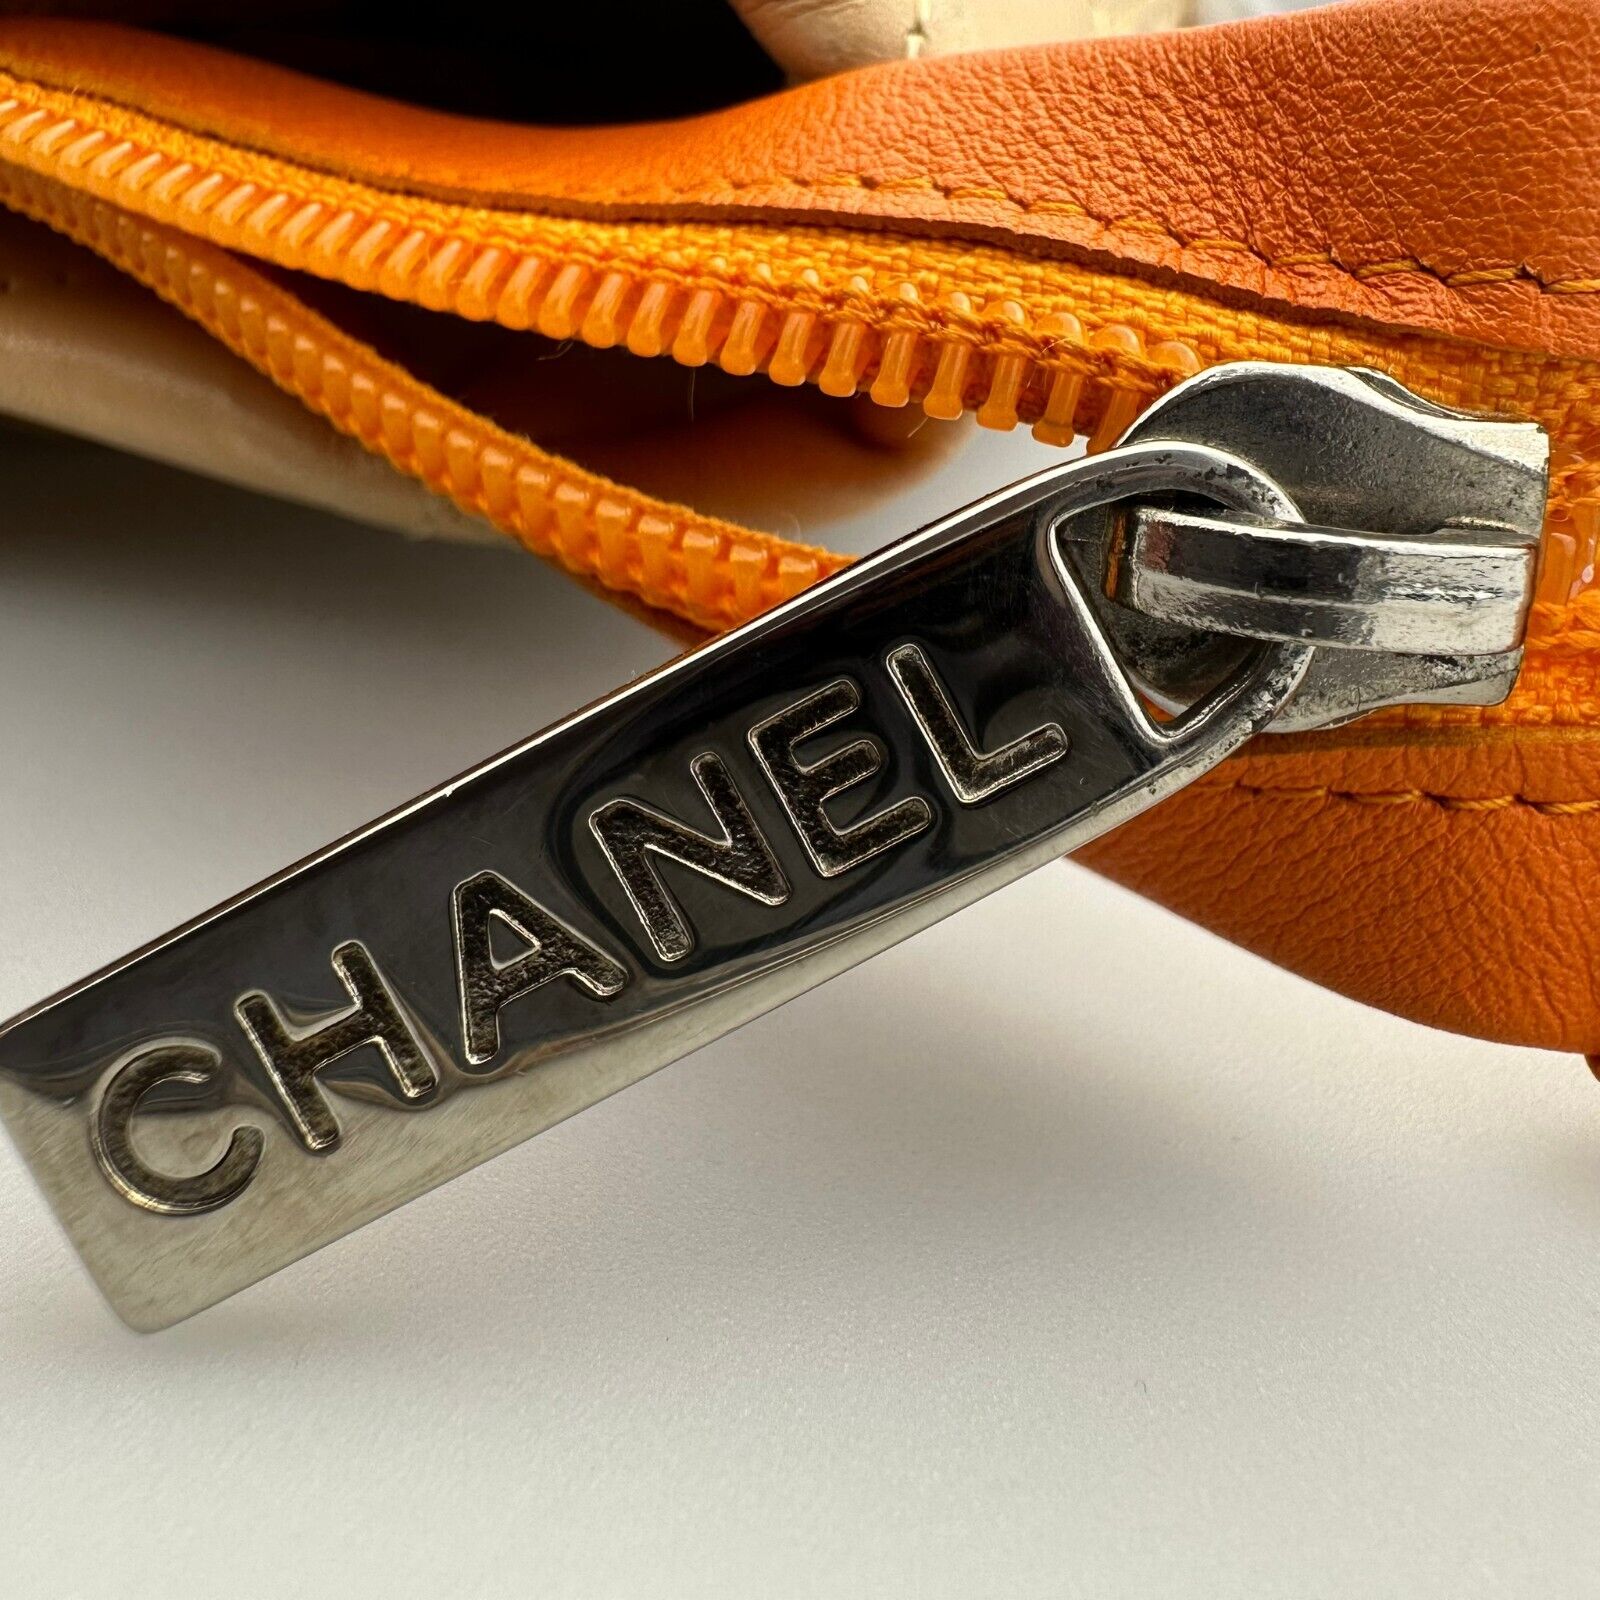 Chanel Ligne Cambon Tote Bag Mini/Small Beige